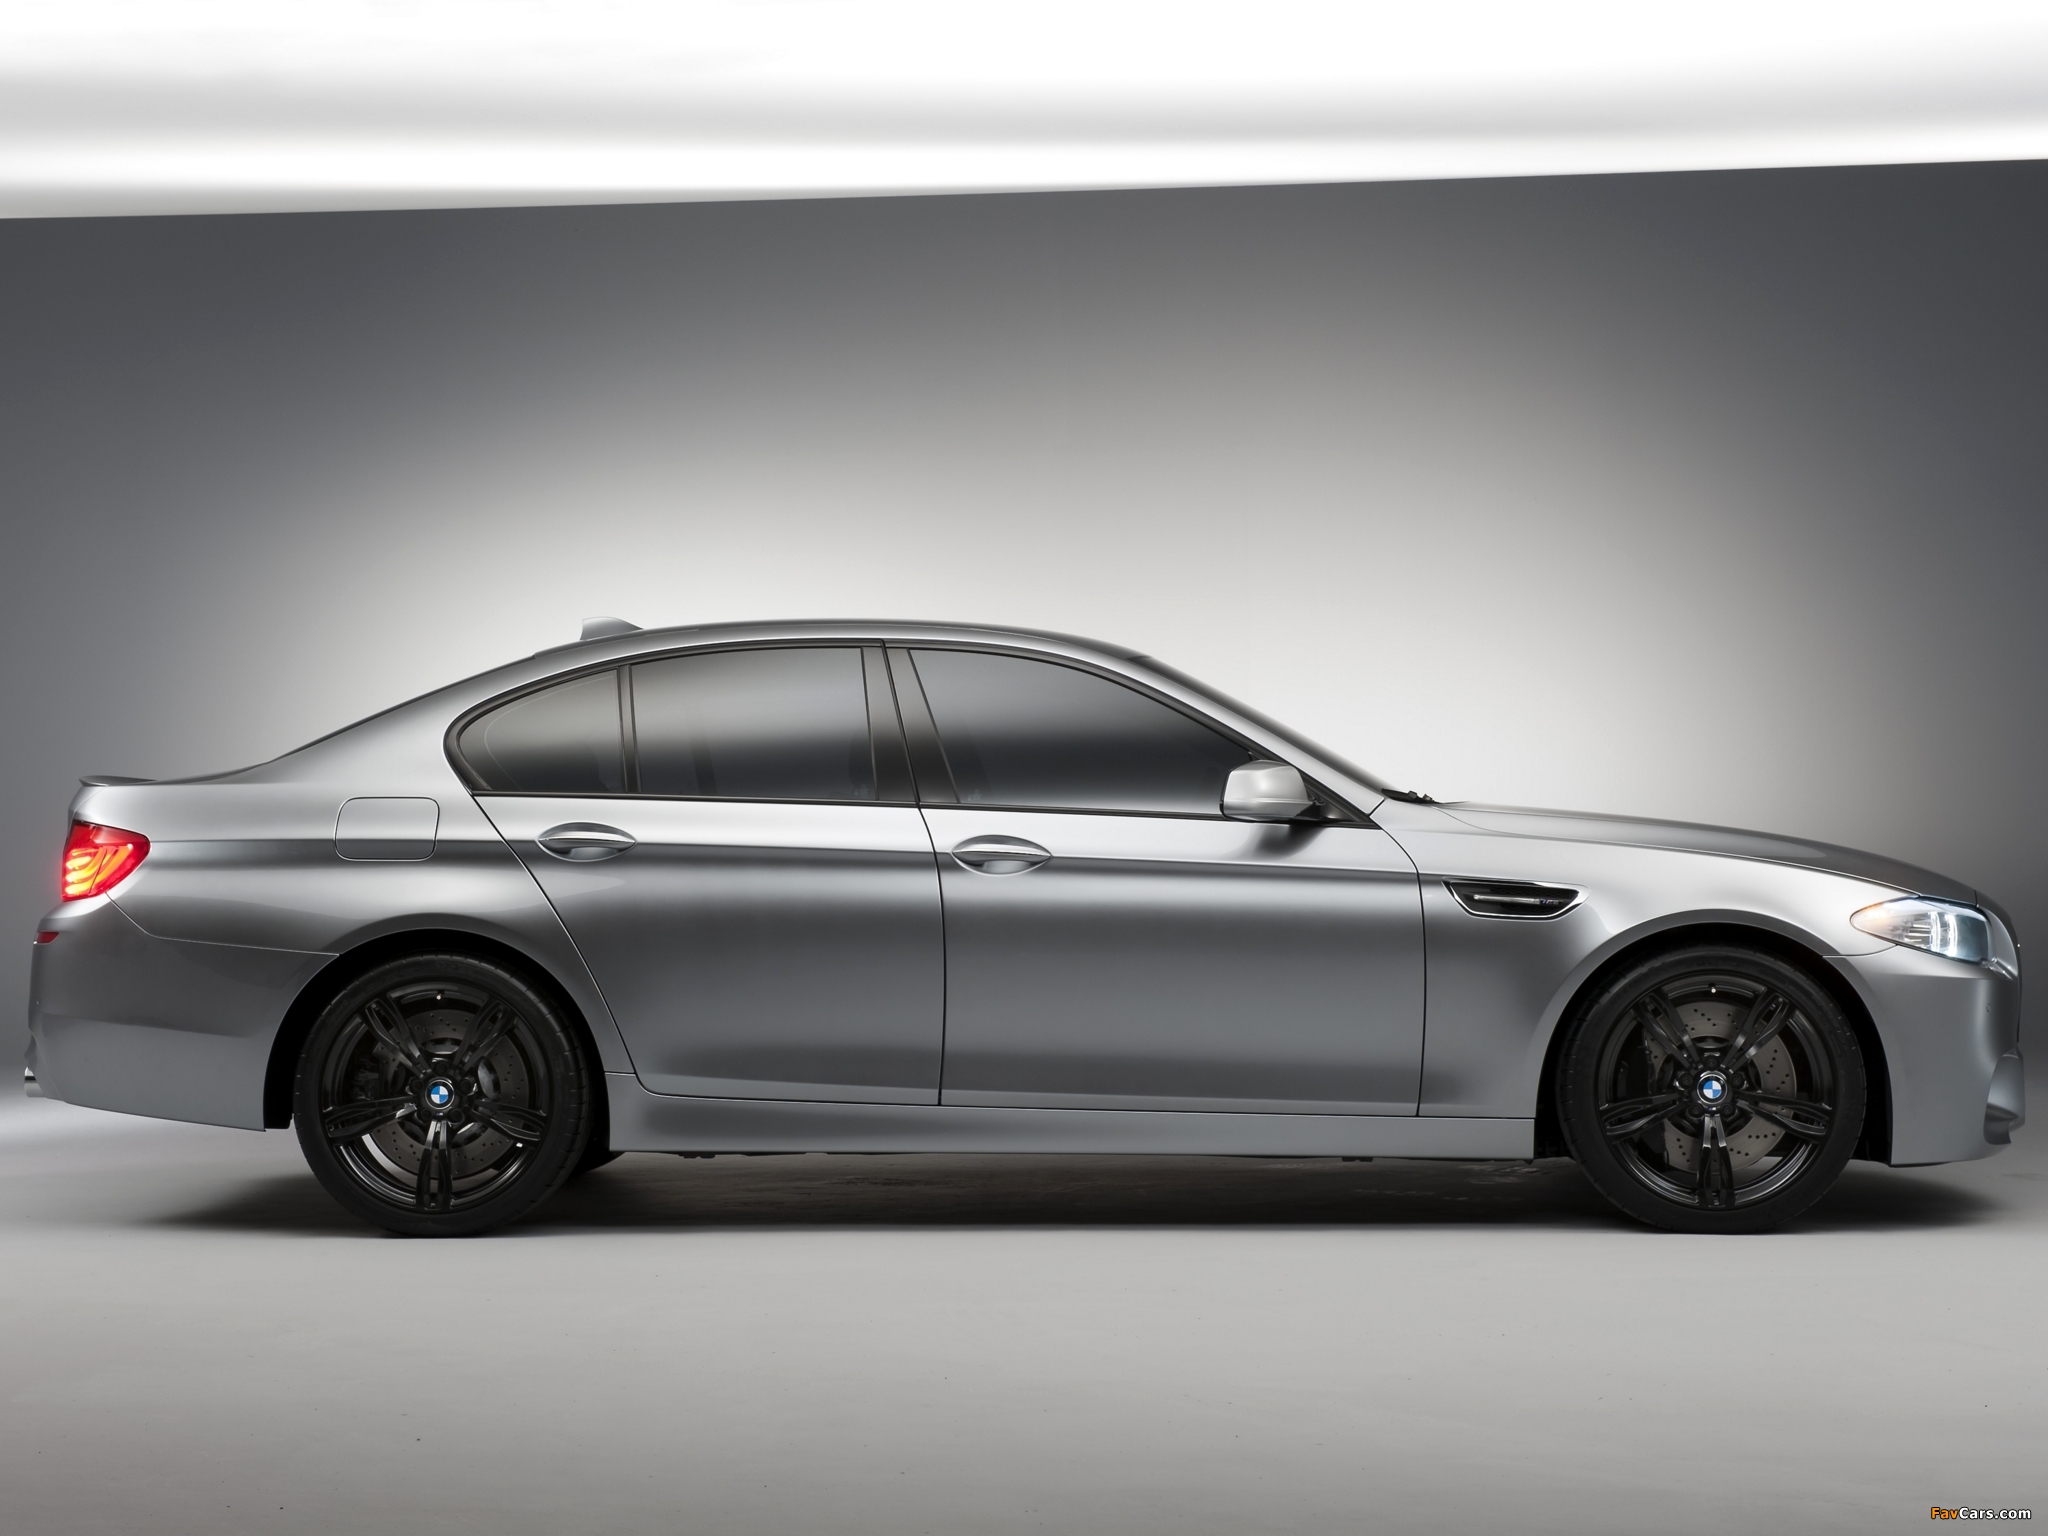 BMW Concept M5 (F10) 2011 images (2048 x 1536)